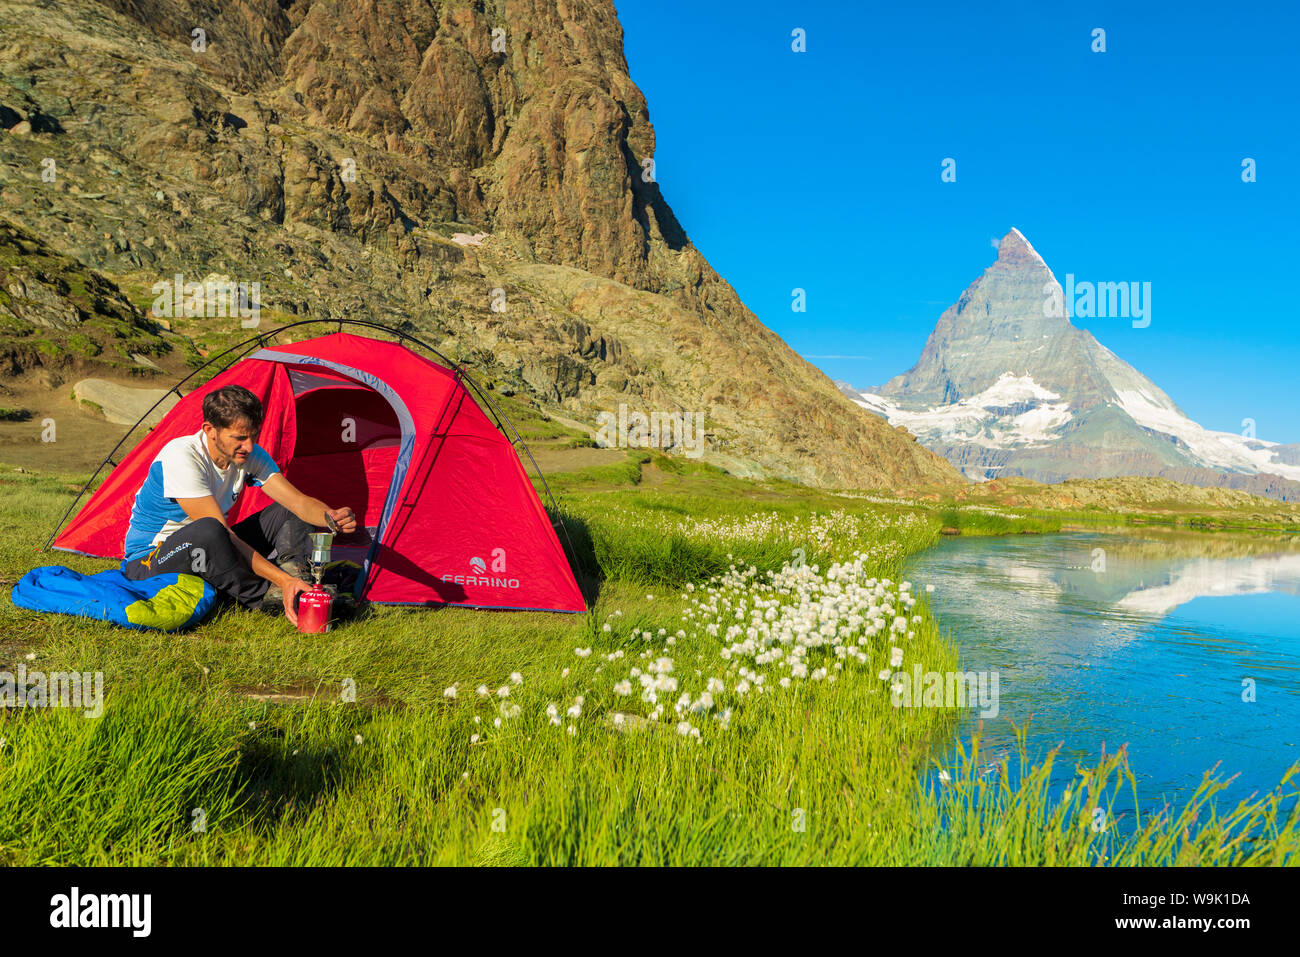 Escursionista presso il lago Riffelsee fa caffè tenda esterna affacciata sul Cervino e Zermatt, canton Vallese, alpi svizzere, Svizzera, Europa Foto Stock